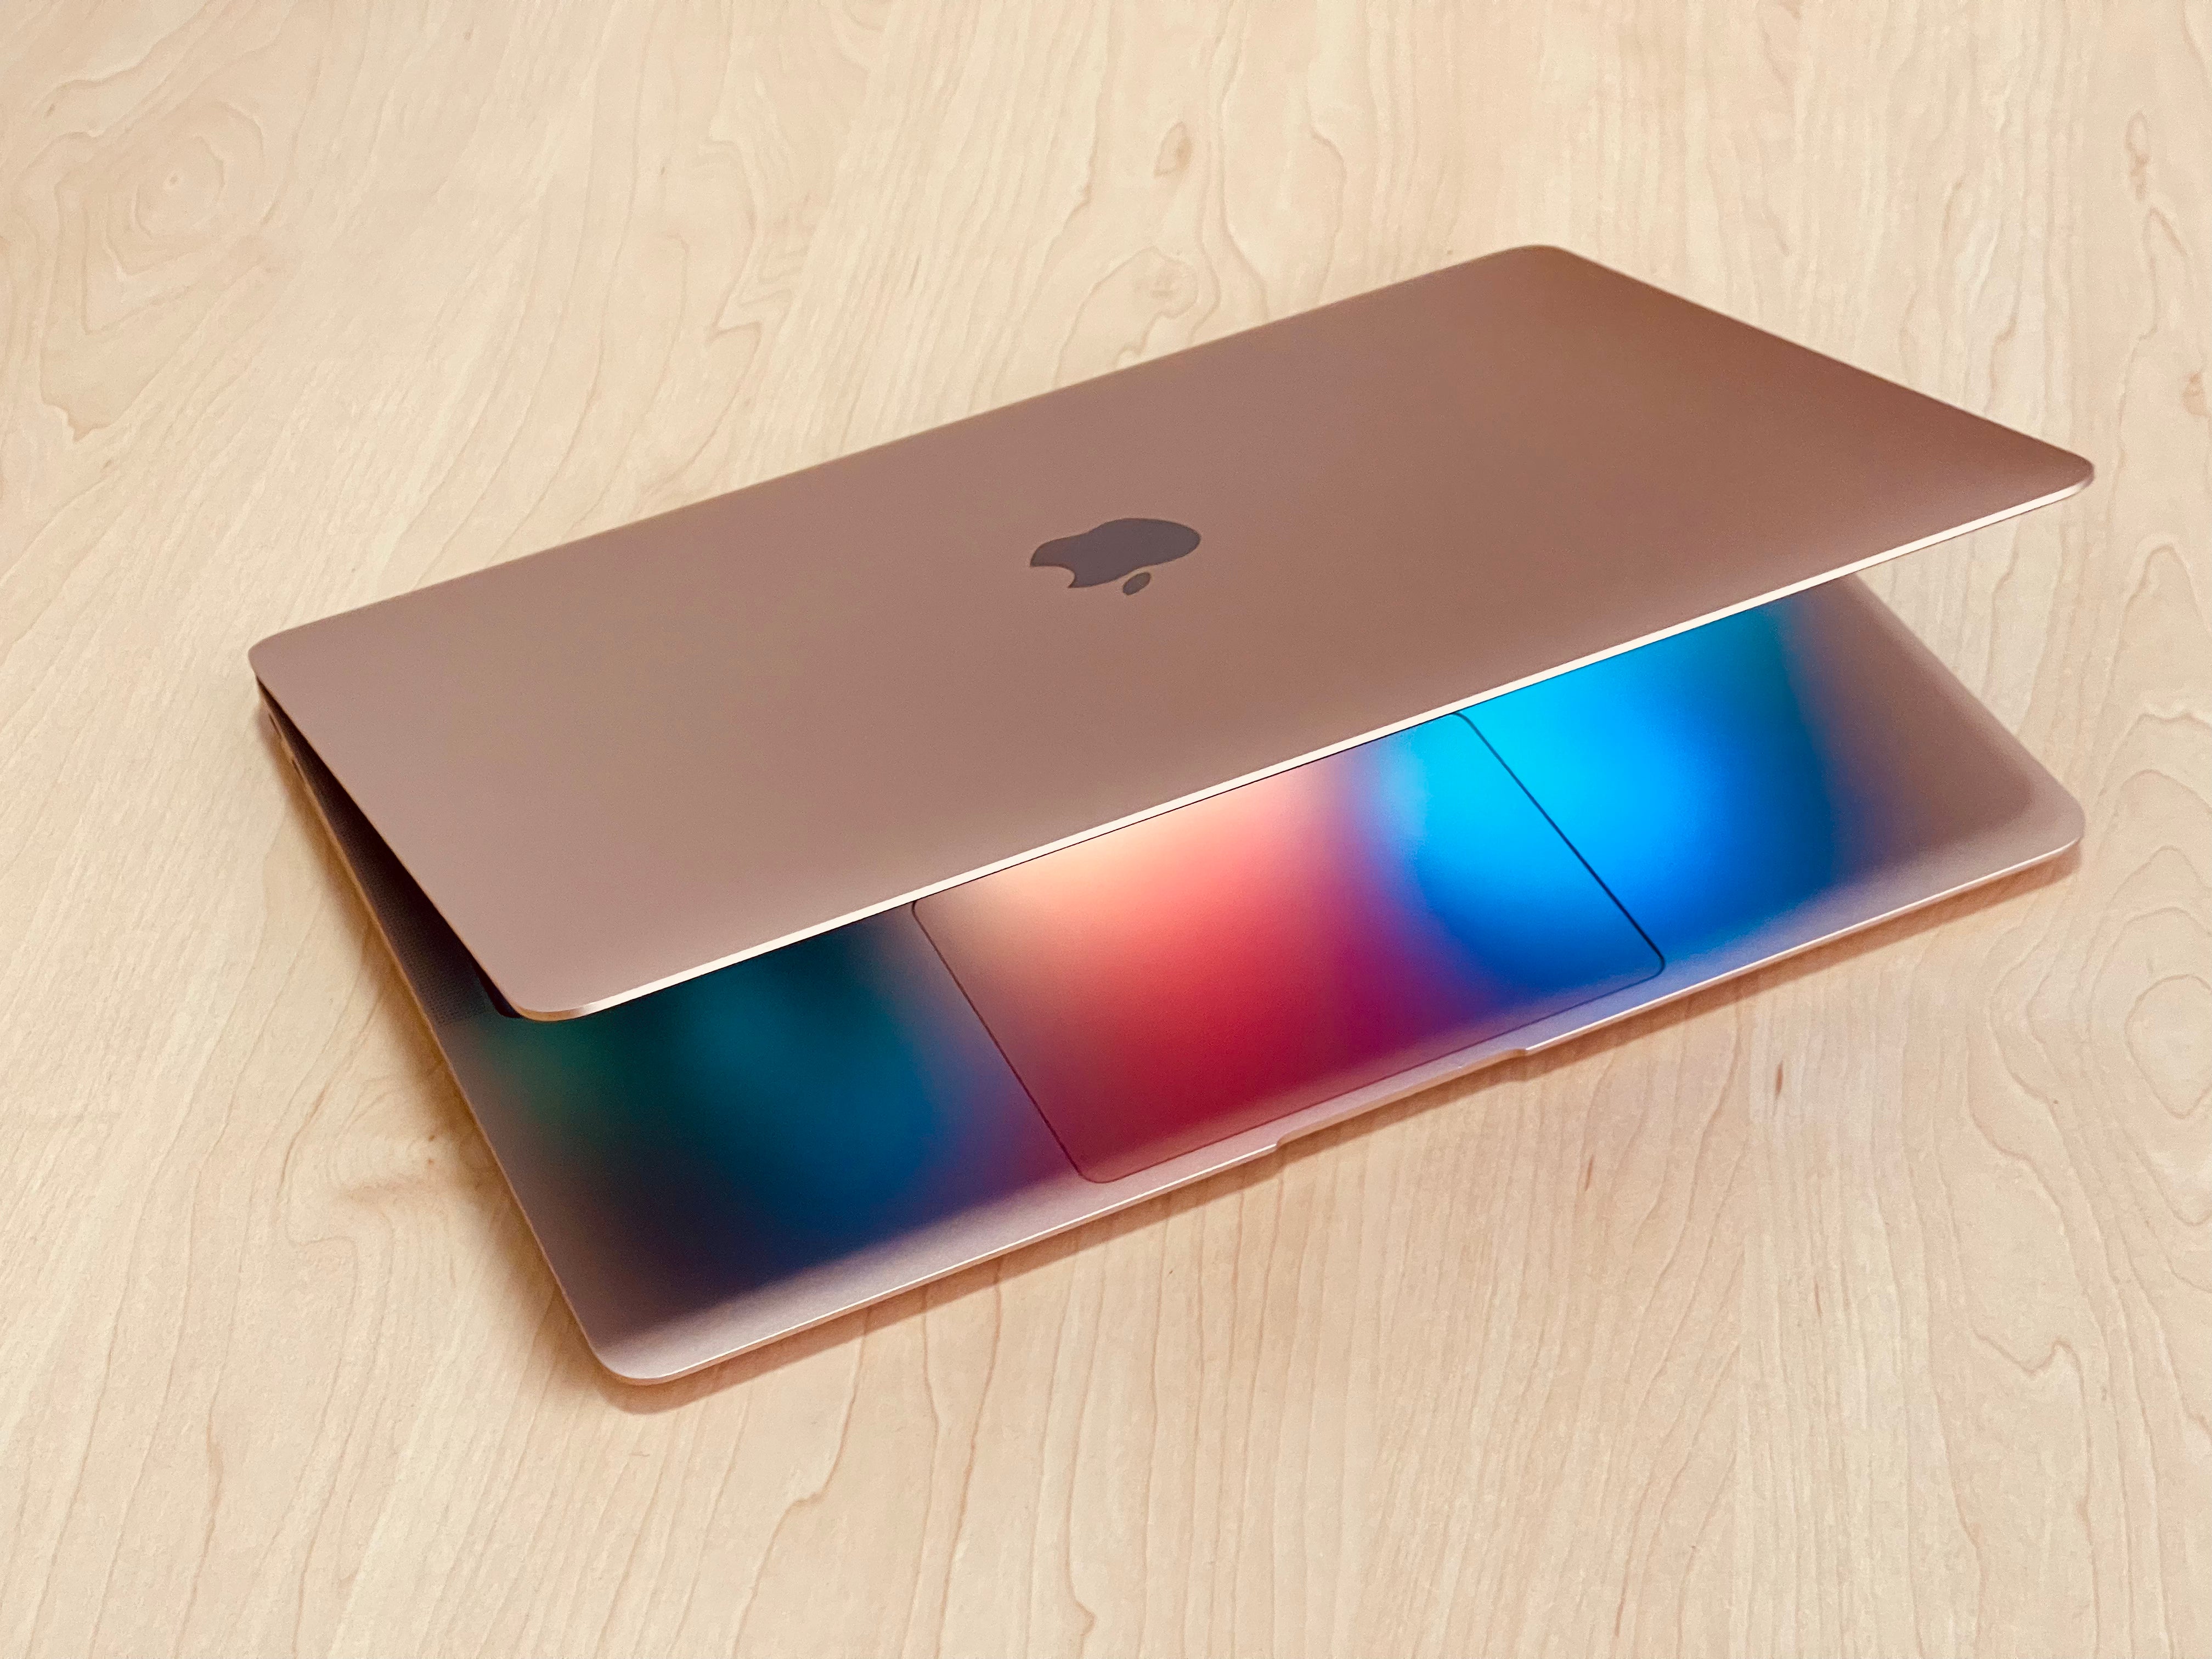 2020 Apple MacBook Air 13-inch M1 8-Core CPU, 7-Core GPU (8GB Unified RAM, 256GB SSD, Gold) -  Pre Owned / 3 Month Warranty - Mac Shack